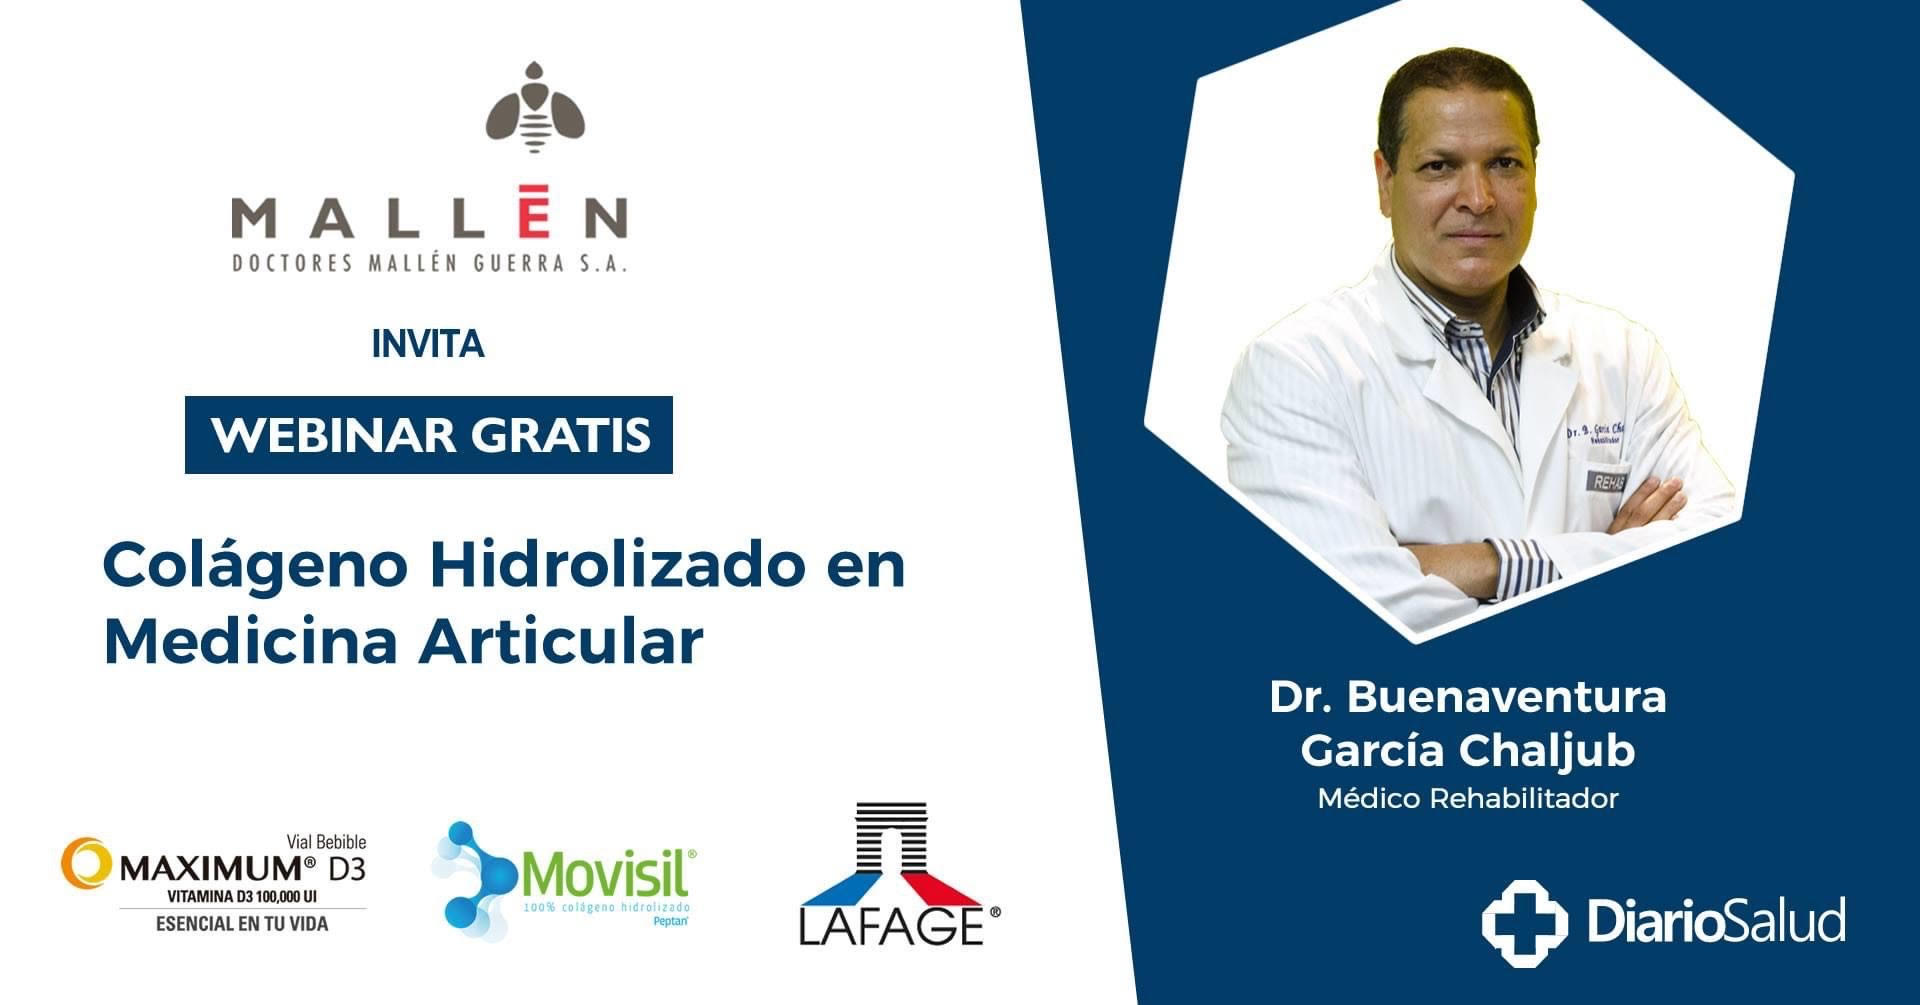 Doctores Mallén invita a webinar “Colágeno Hidrolizado en Medicina Articular” 